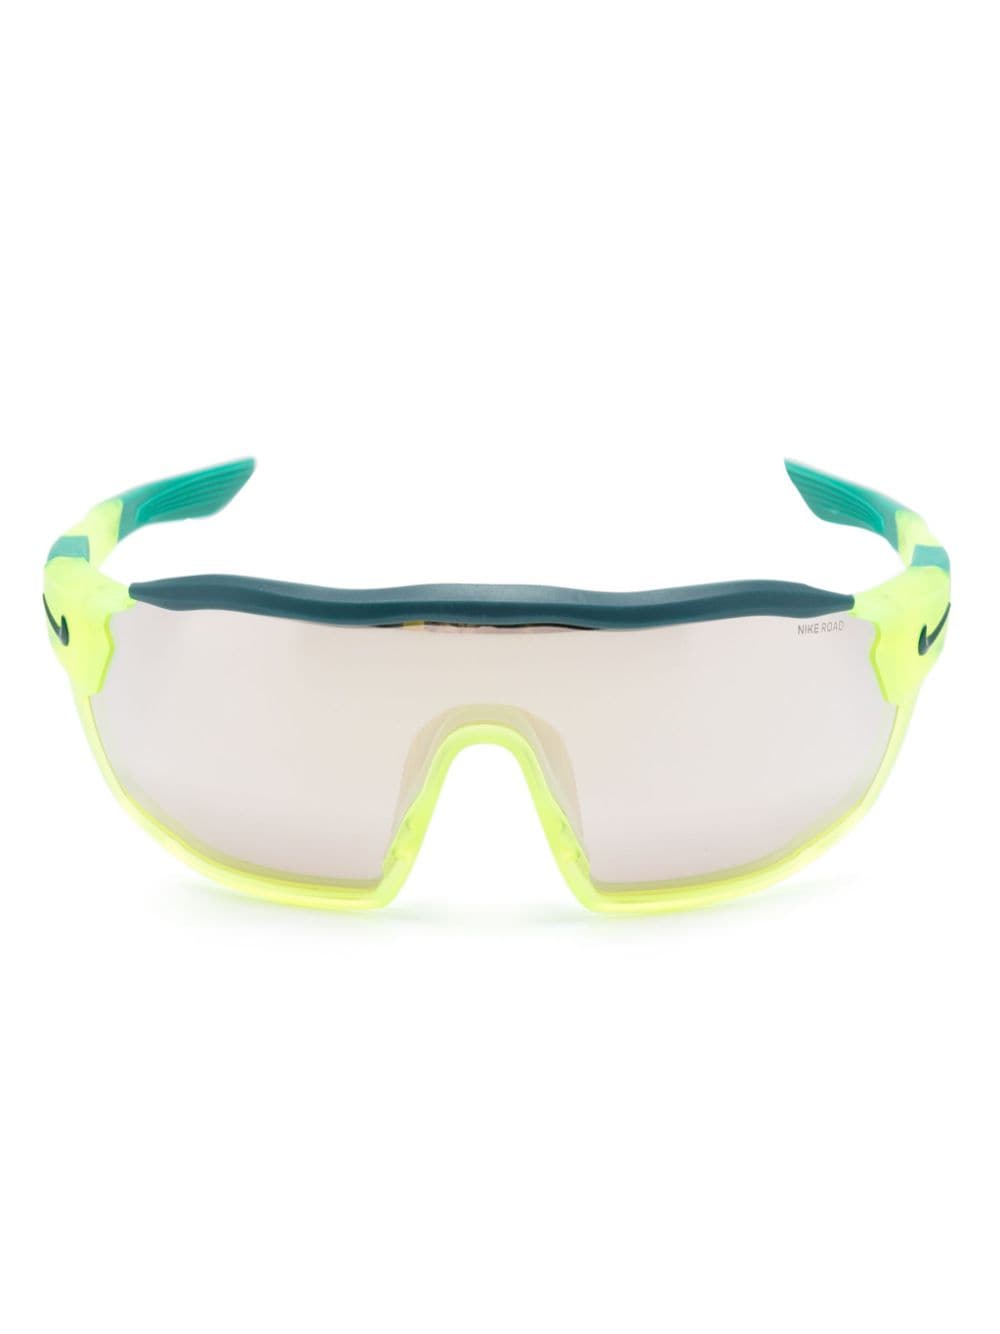 nike lunettes de soleil à monture pilote - vert